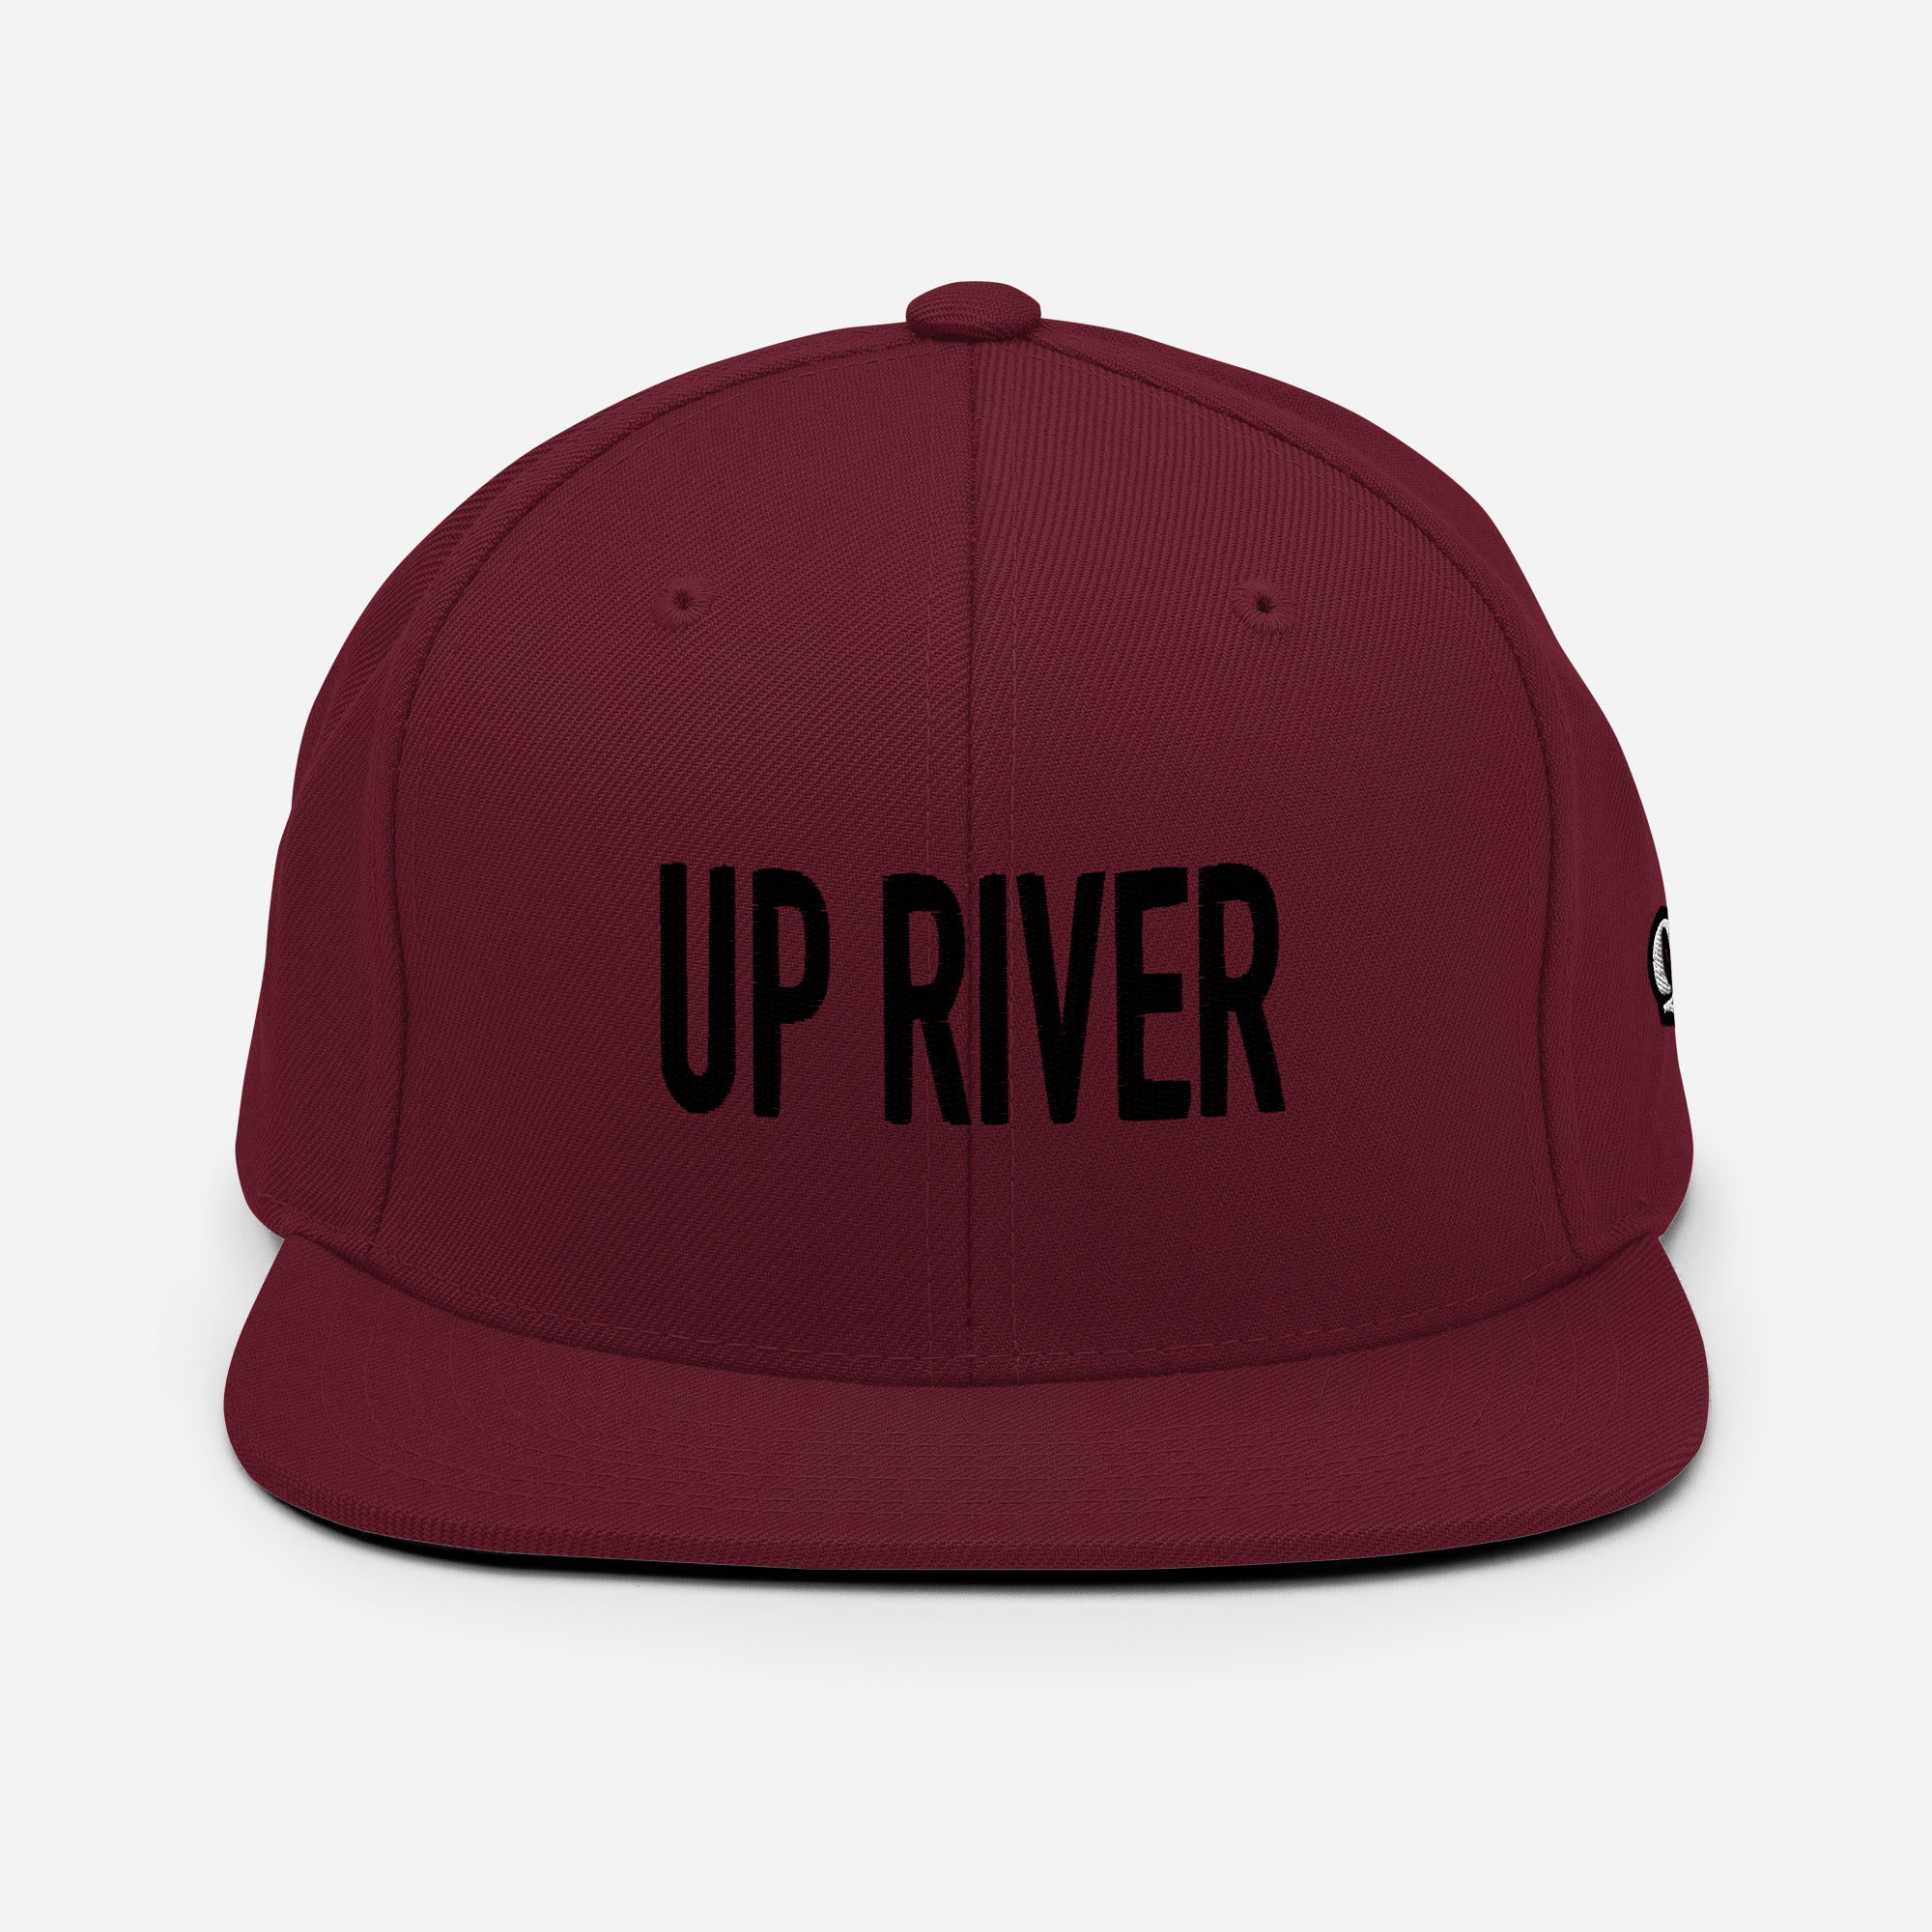 Up River Snapback Hat